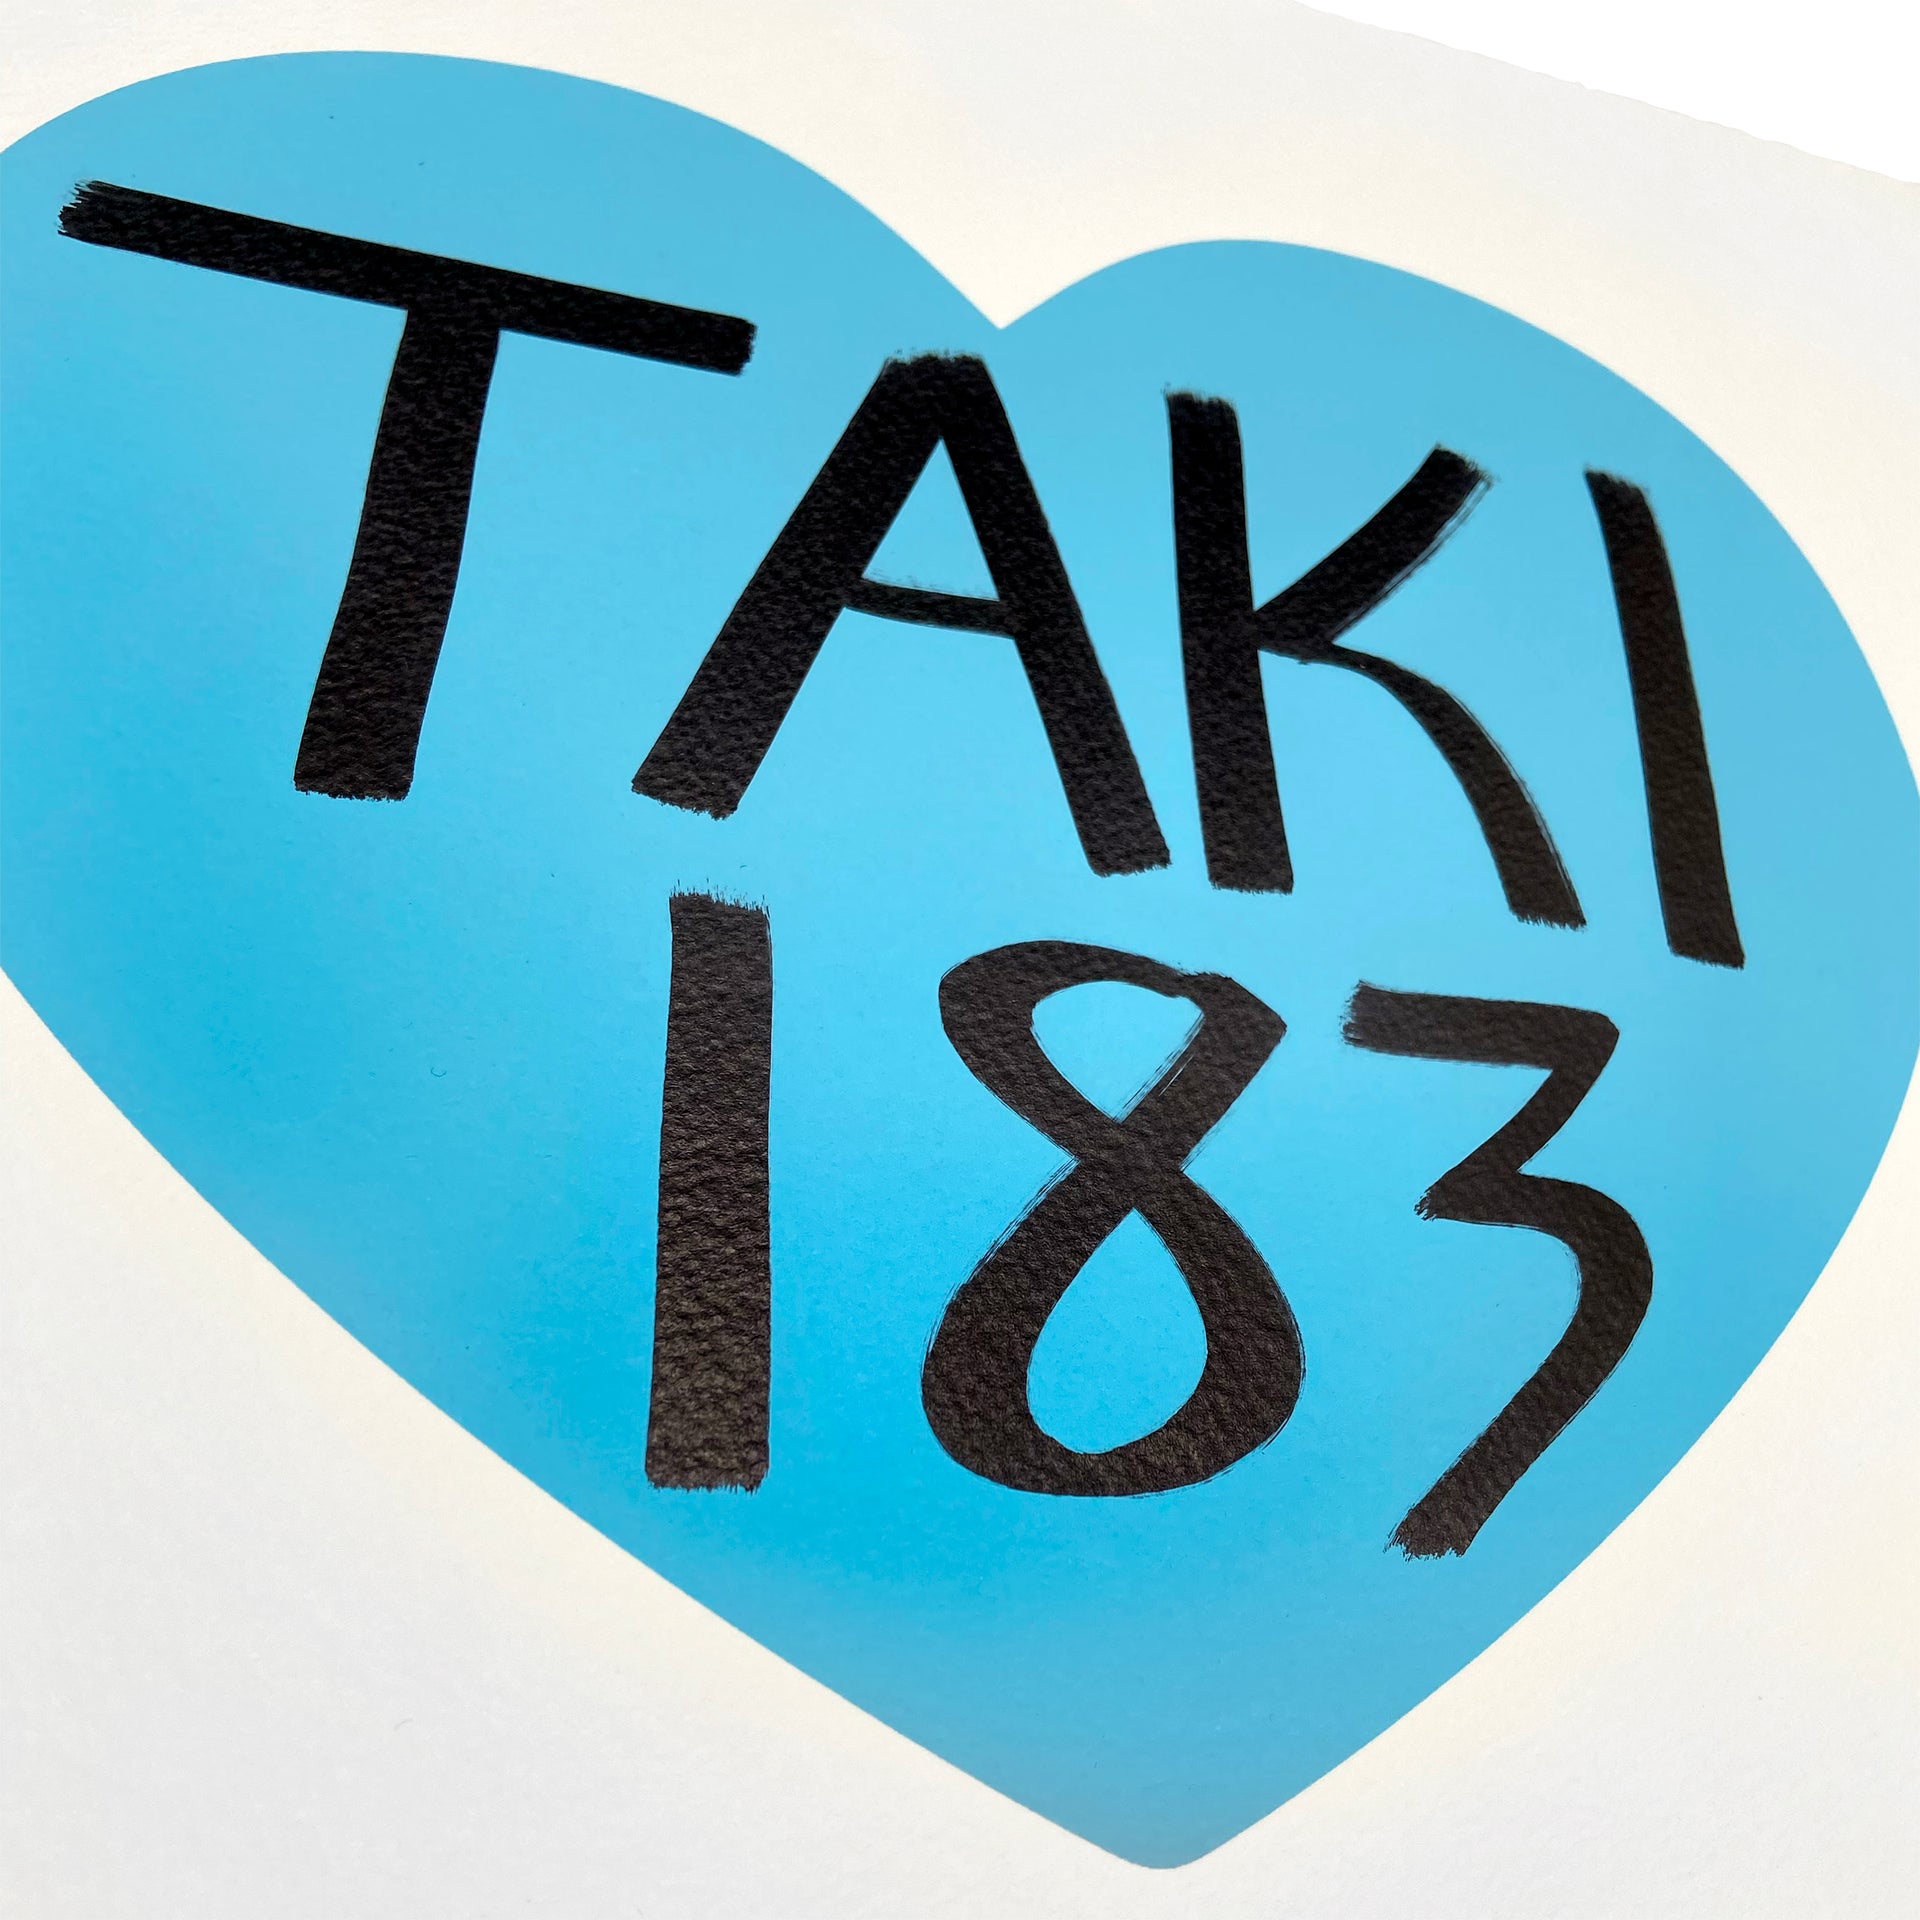 TAKI 183 "I Heart NY: Blue Edition" AP Print